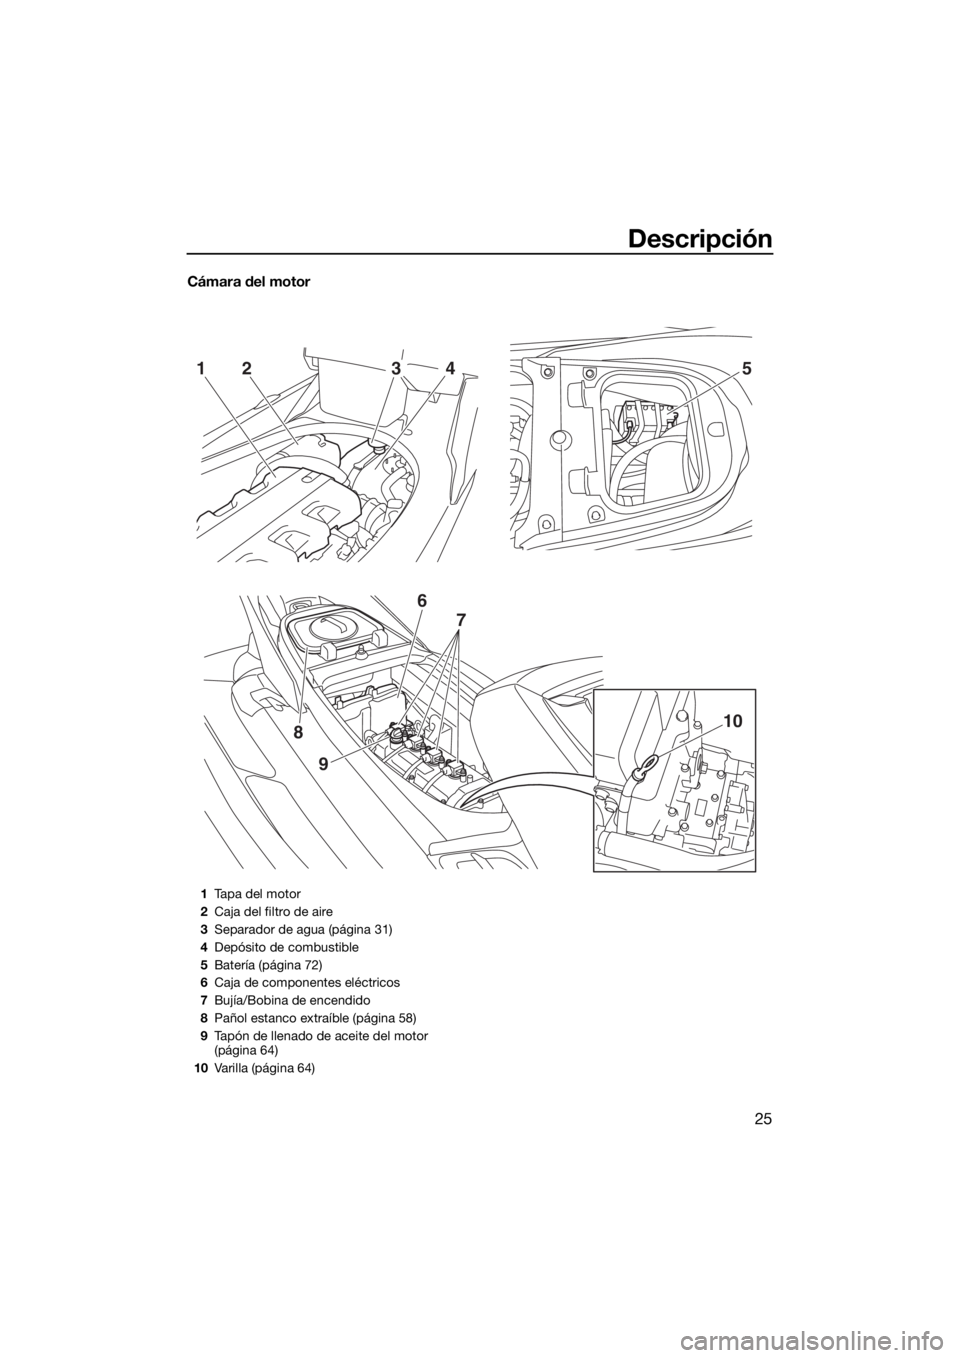 YAMAHA FX HO 2017  Manuale de Empleo (in Spanish) Descripción
25
Cámara del motor
52143
9
8
6
7
10
1Tapa del motor
2Caja del filtro de aire
3Separador de agua (página 31)
4Depósito de combustible
5Batería (página 72)
6Caja de componentes eléct